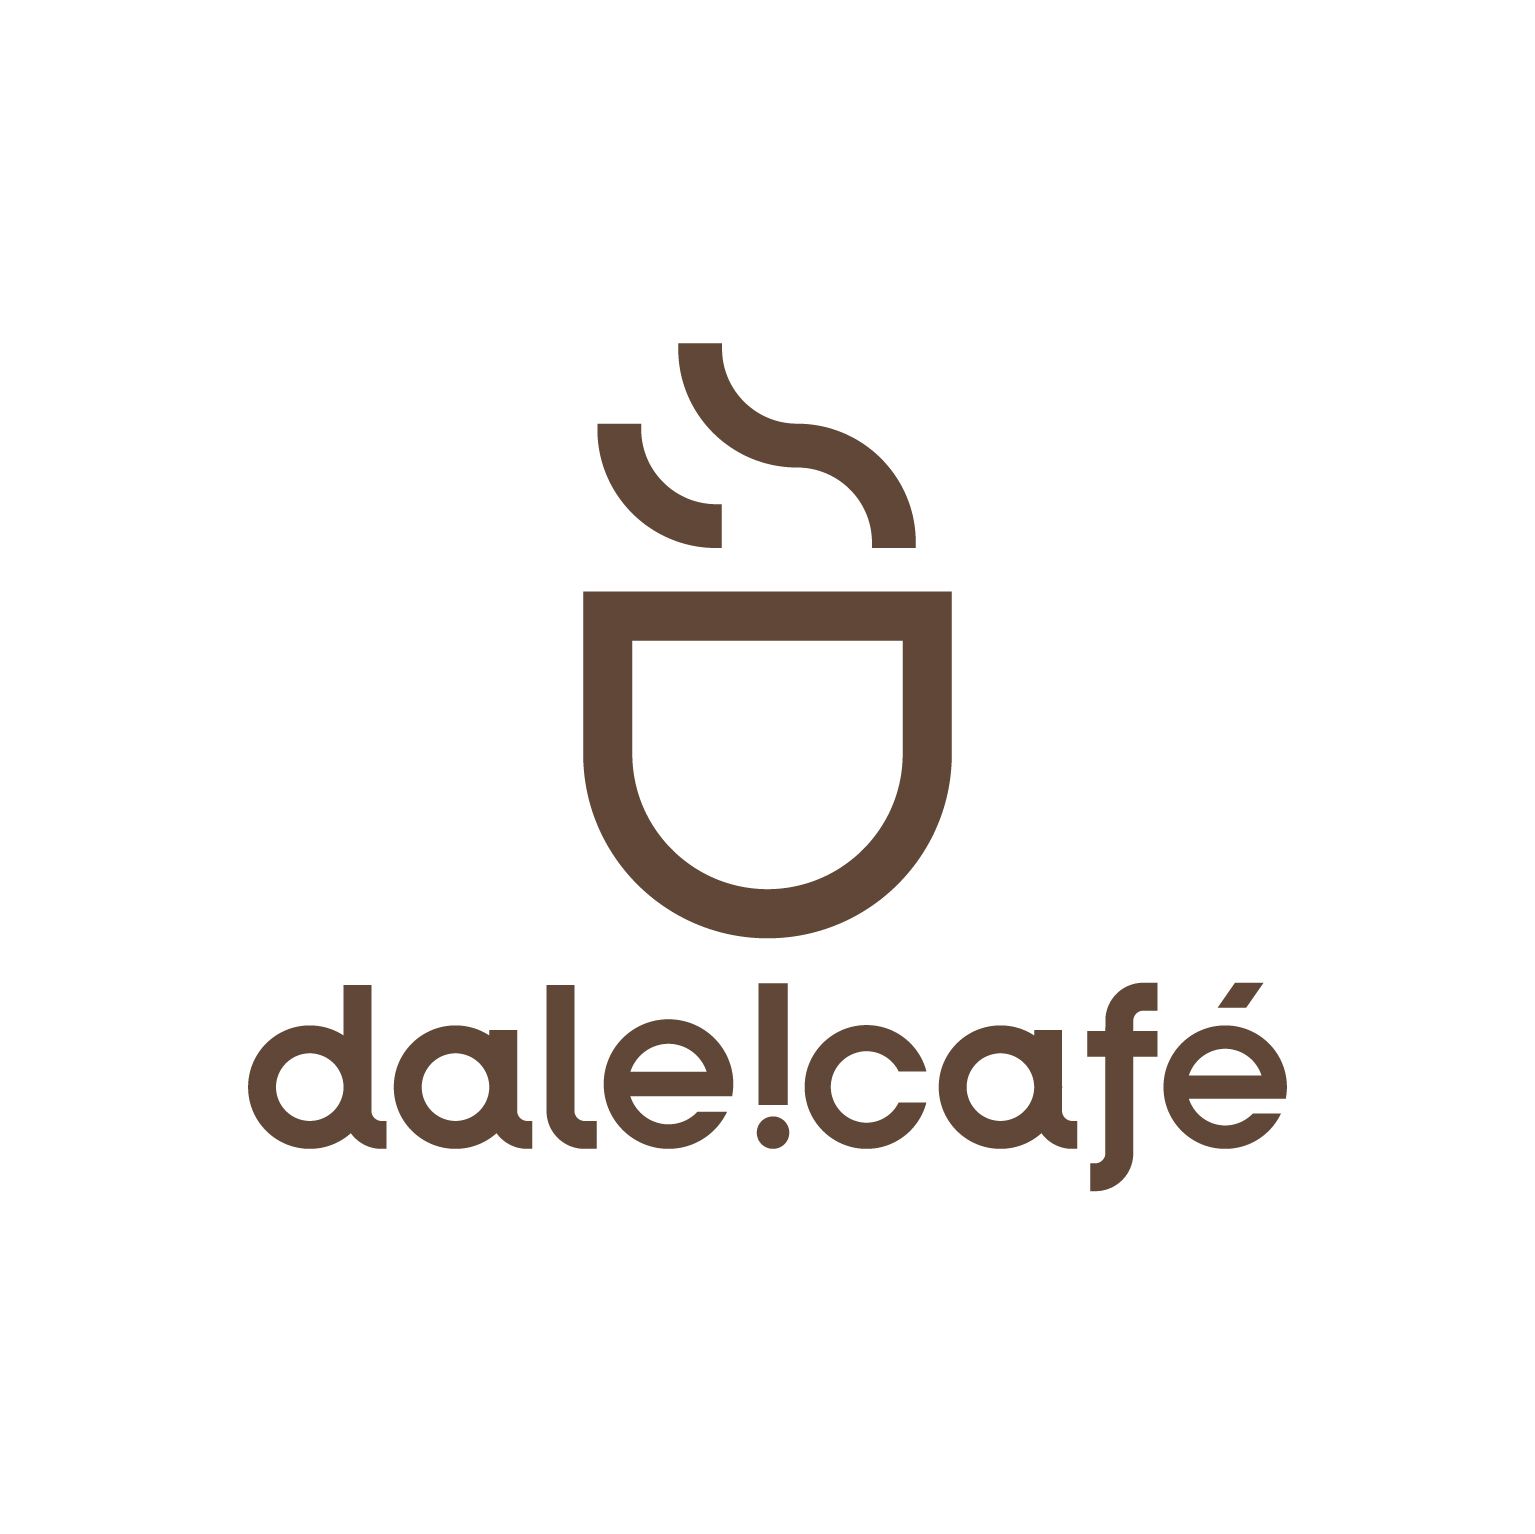 Dale Café Sociedad Anónima